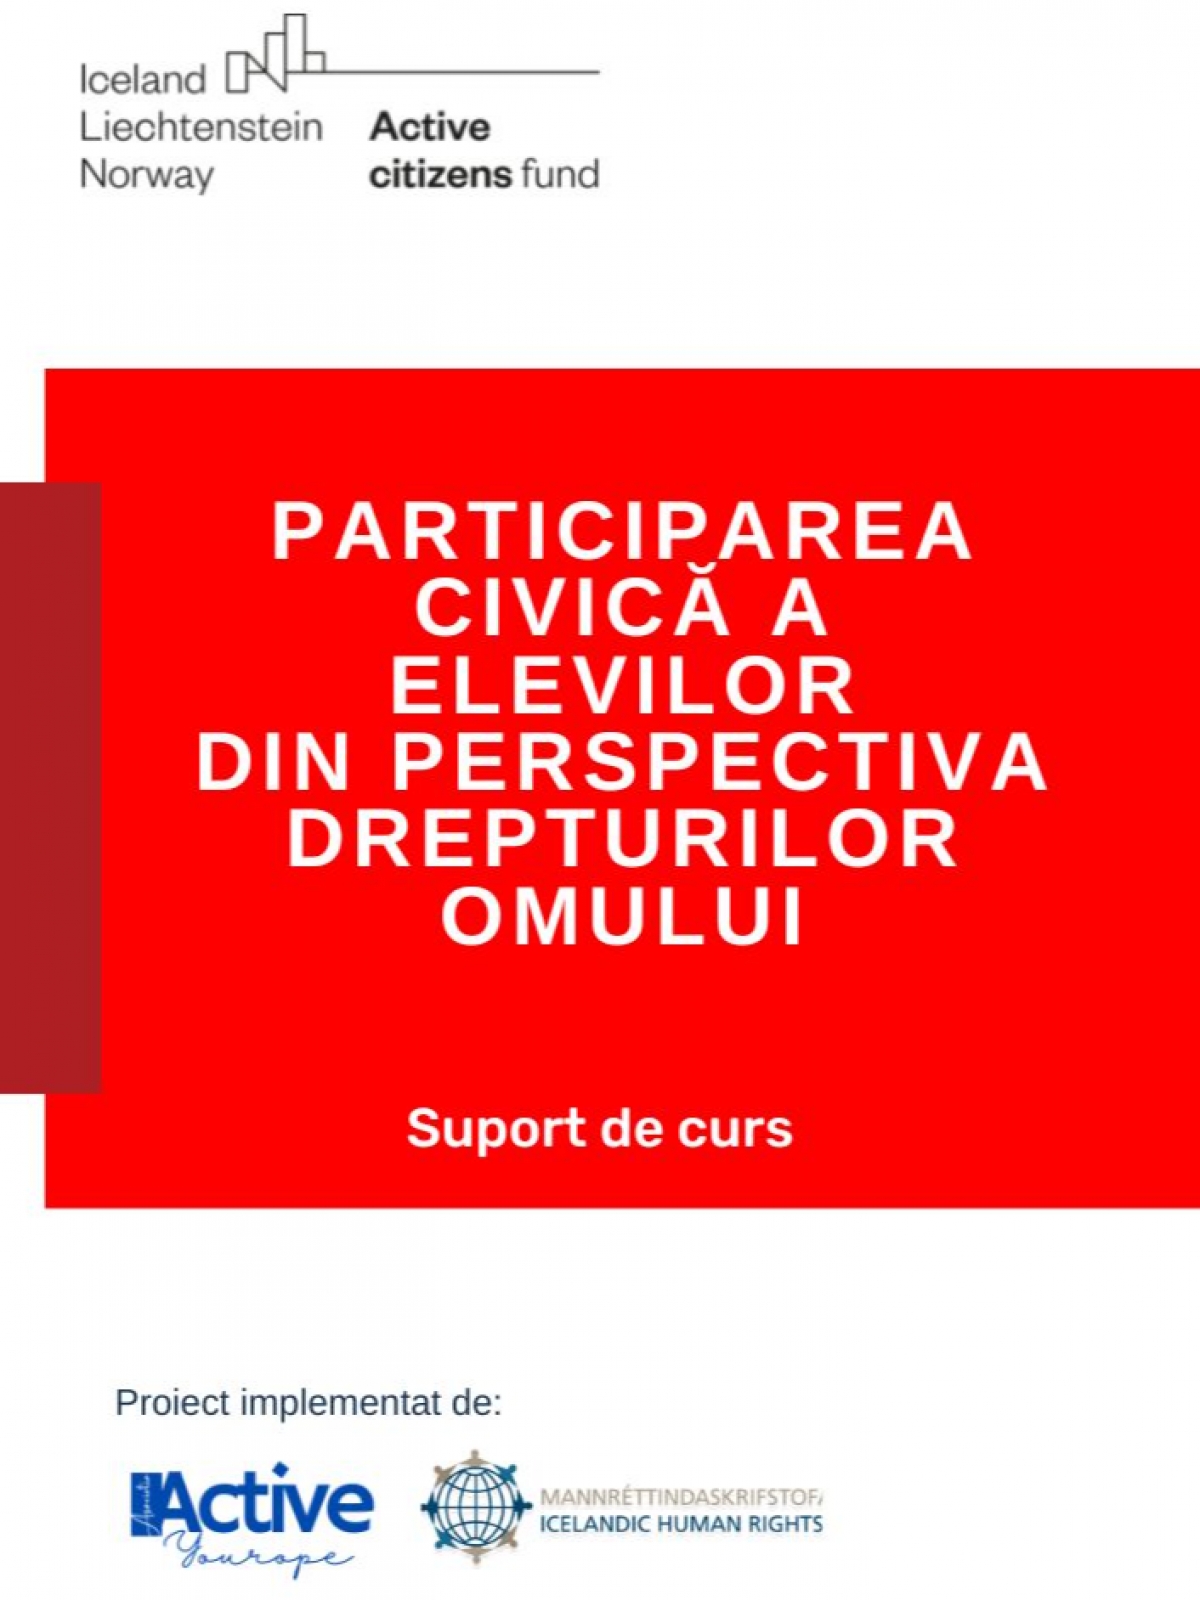 Participarea civica a elevilor din perspectiva drepturilor omului
